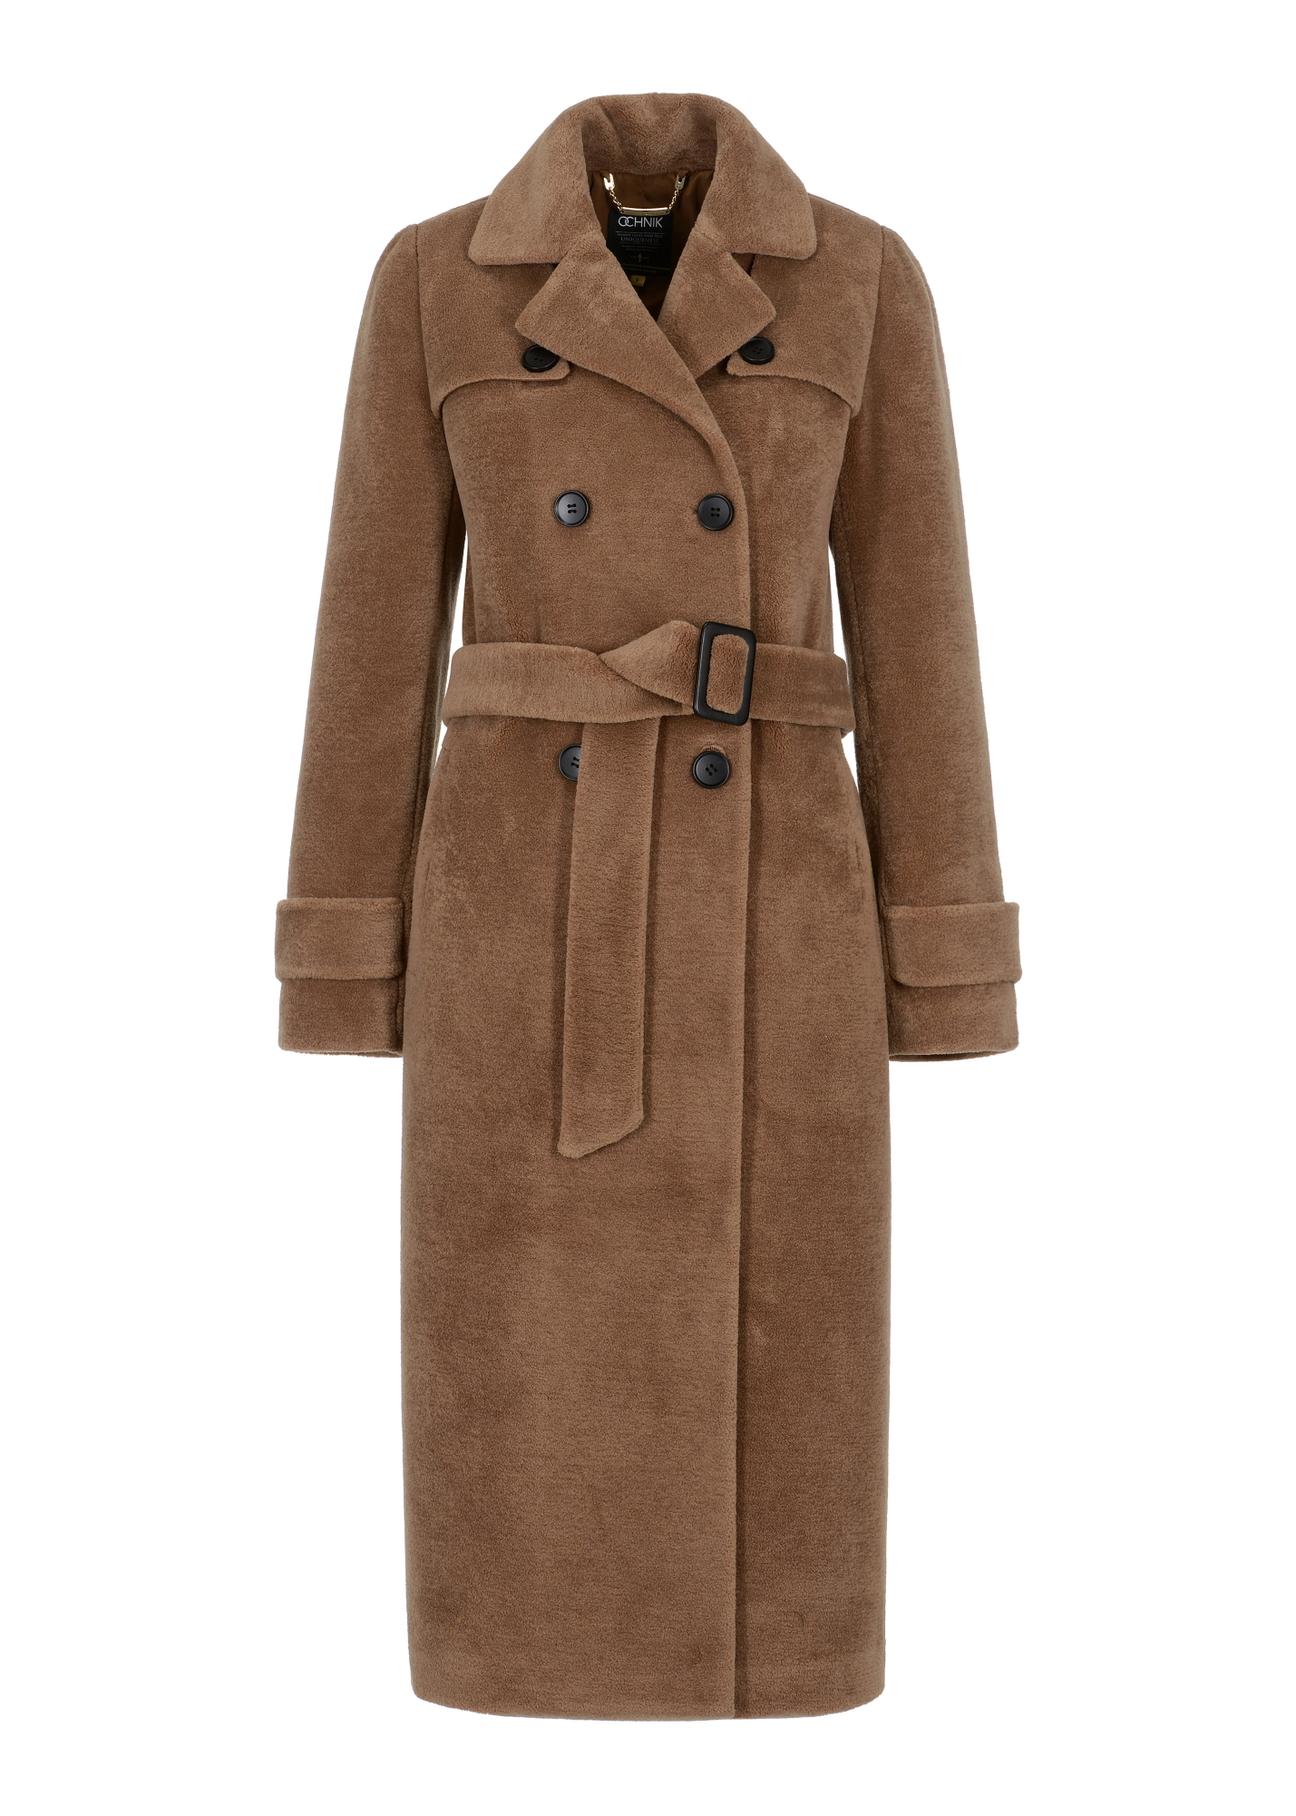 Dwurzędowy płaszcz wełniany damski z paskiem FUTDW-0021-24(Z23)